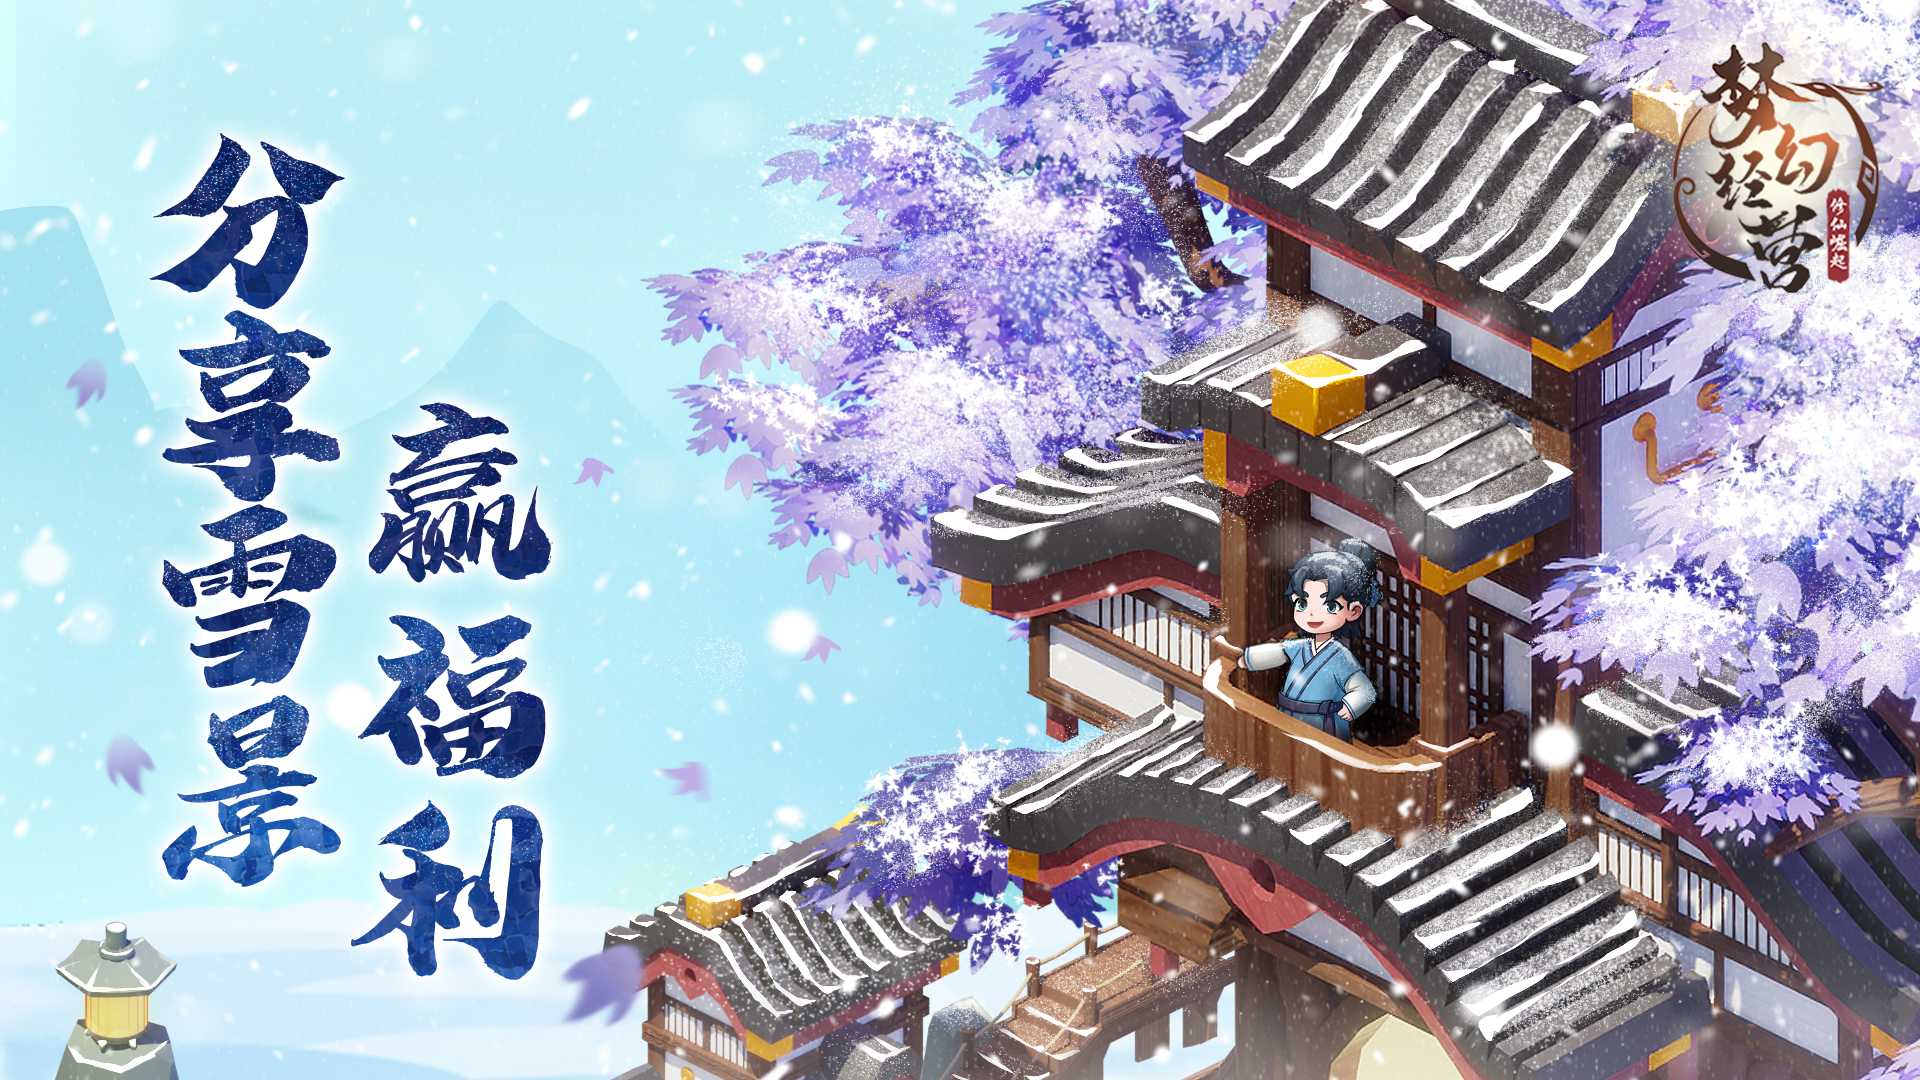 【梦幻经营】时节严寒冬观雪，分享雪景赢福利。